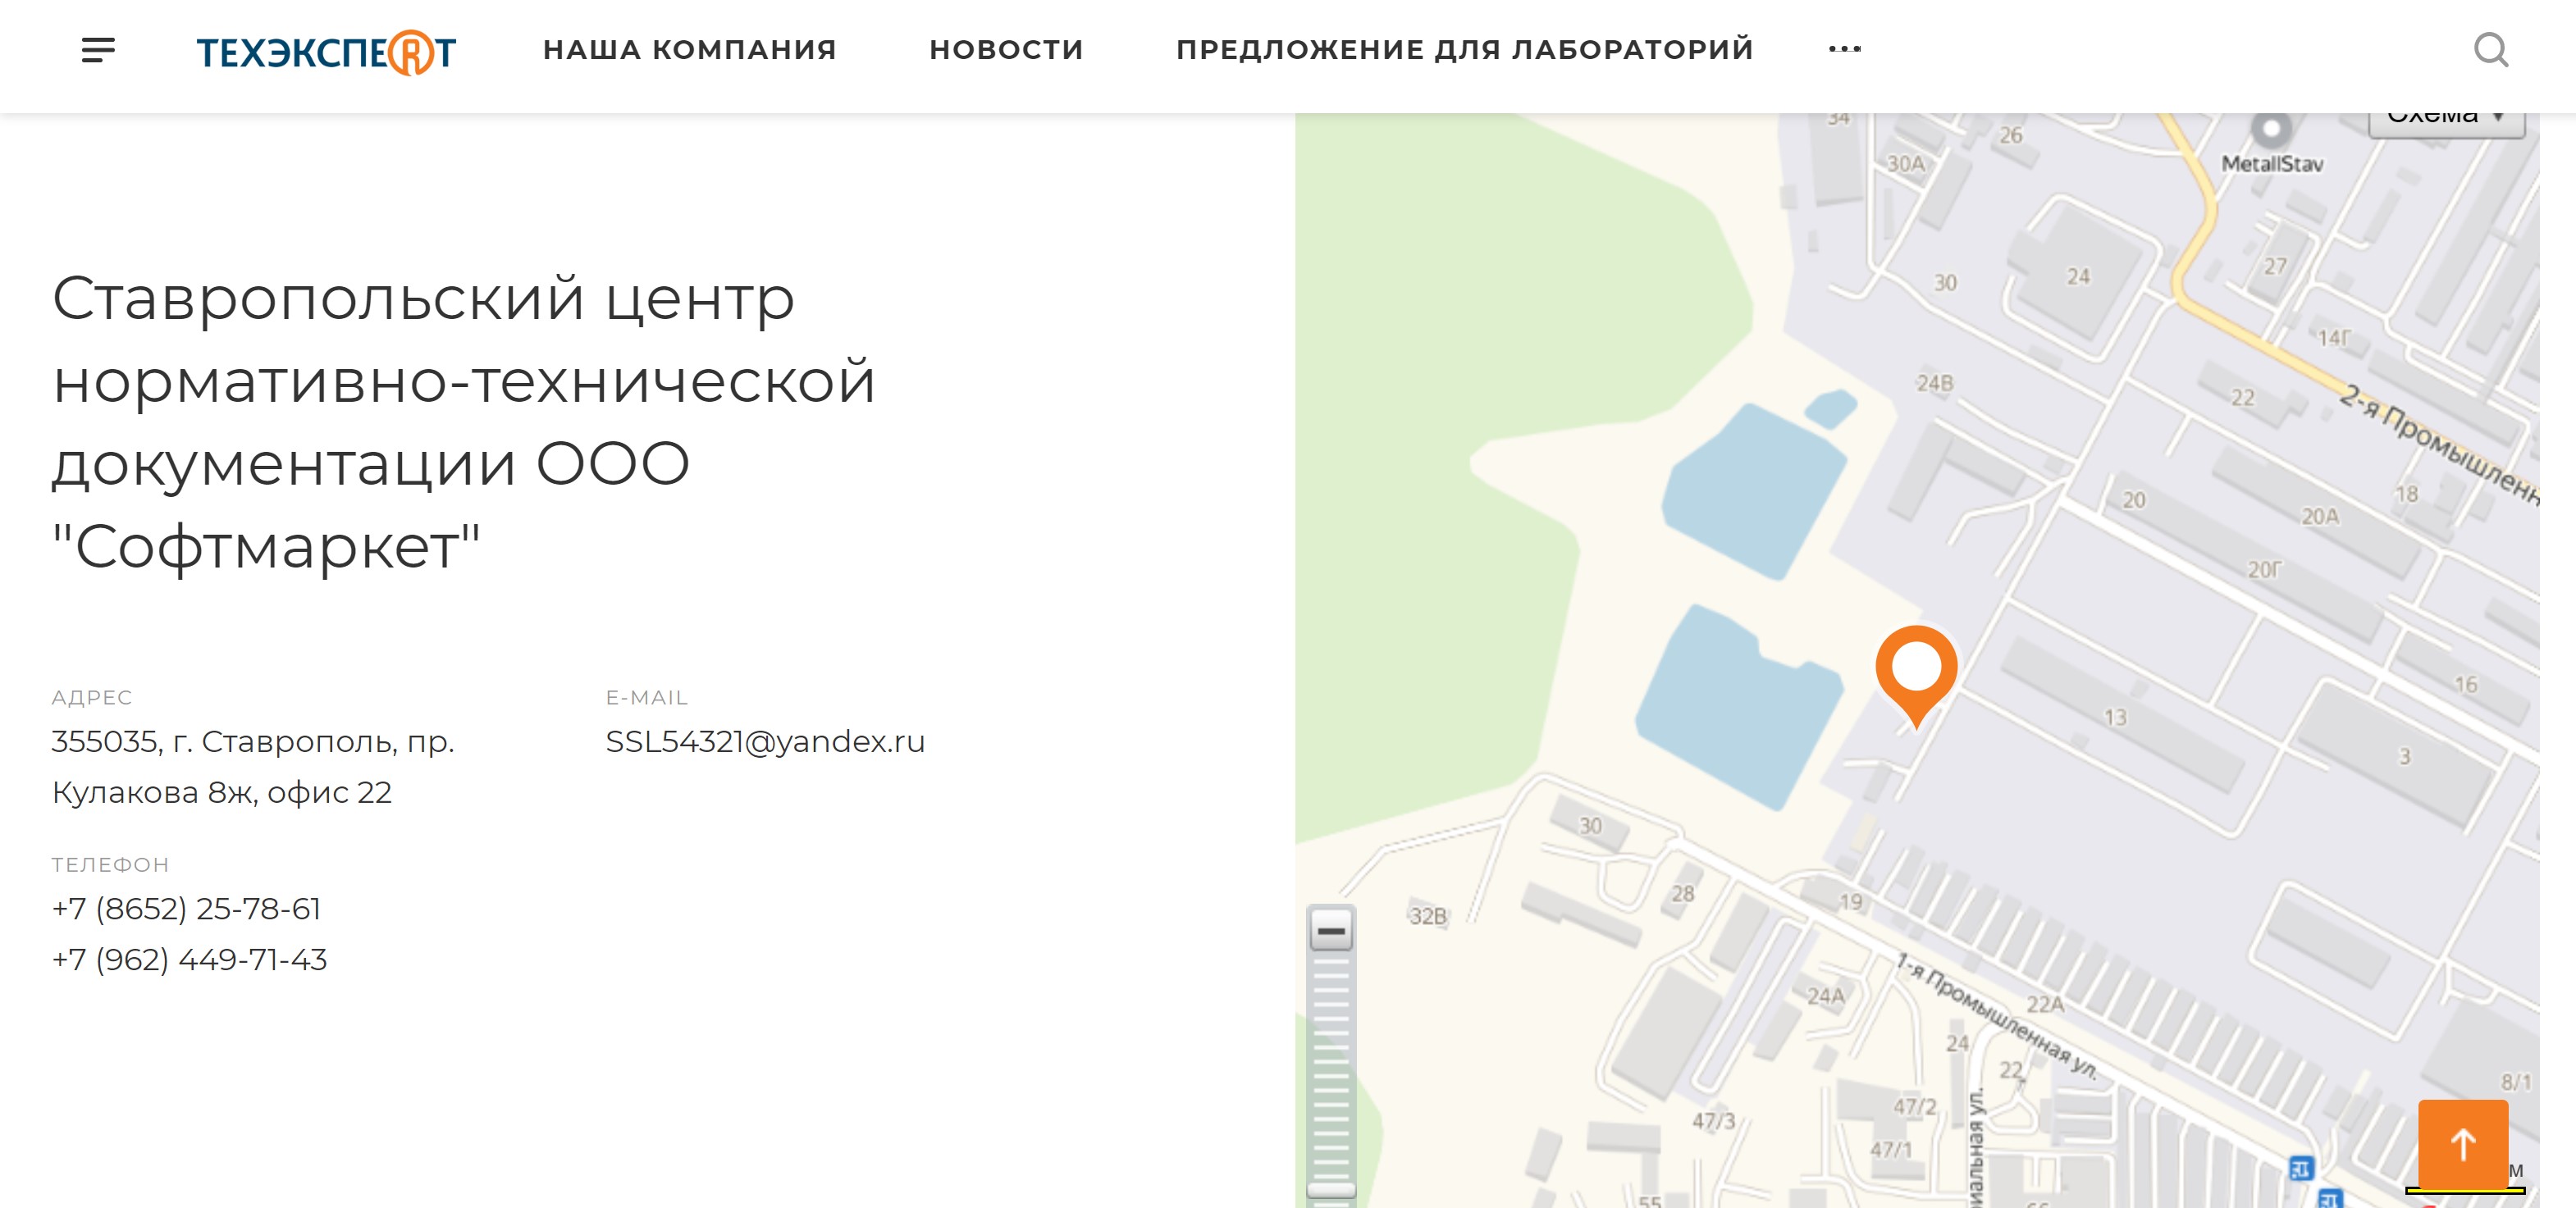 ставропольский центр нормативно-технической документации ооо "софтмаркет"